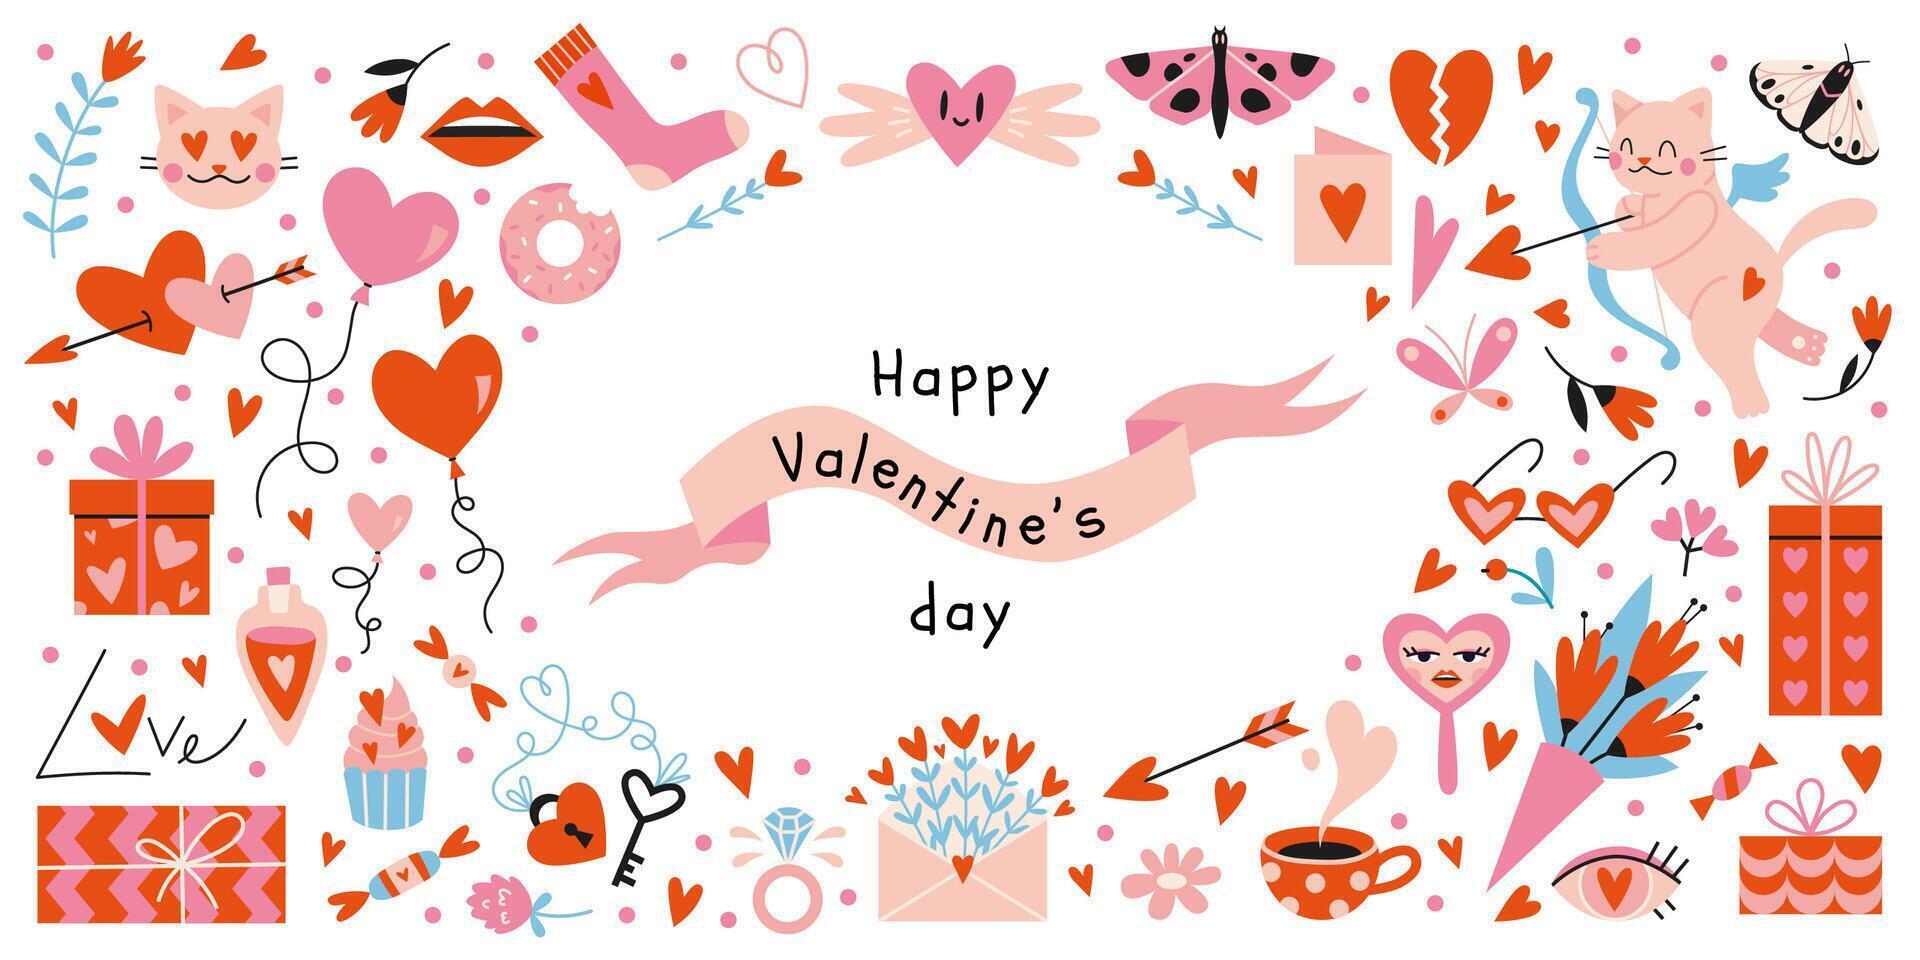 contento San Valentín día grande colocar. muchos varios romántico objetos me gusta corazones, globos, Cupido, regalos y dulces, dibujos animados estilo. de moda moderno vector ilustración aislado en blanco, mano dibujado, plano